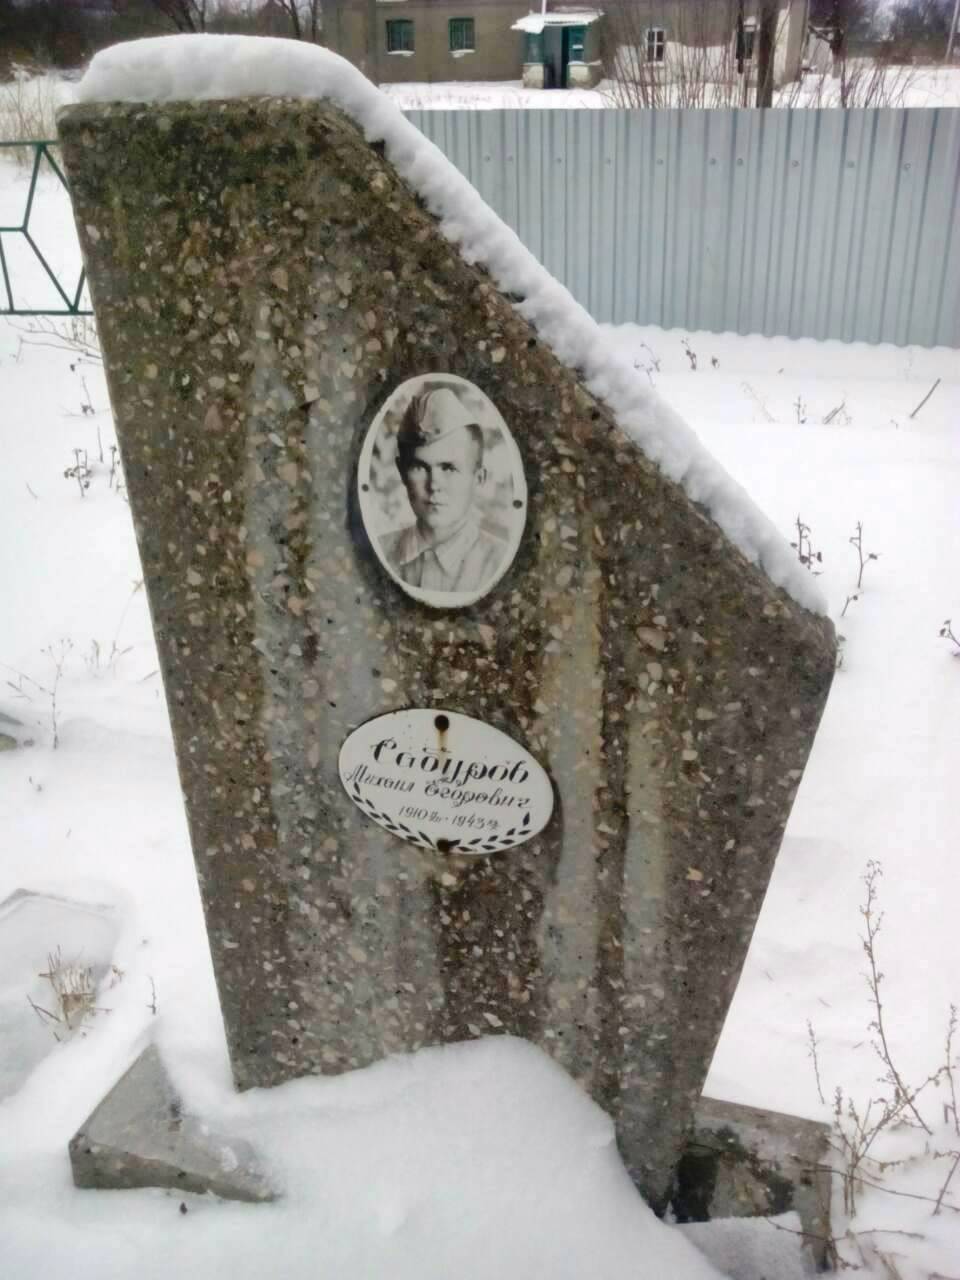 Братская могила в совхозе им. 1 мая в г. Кагарлык Кагарлыкского района 